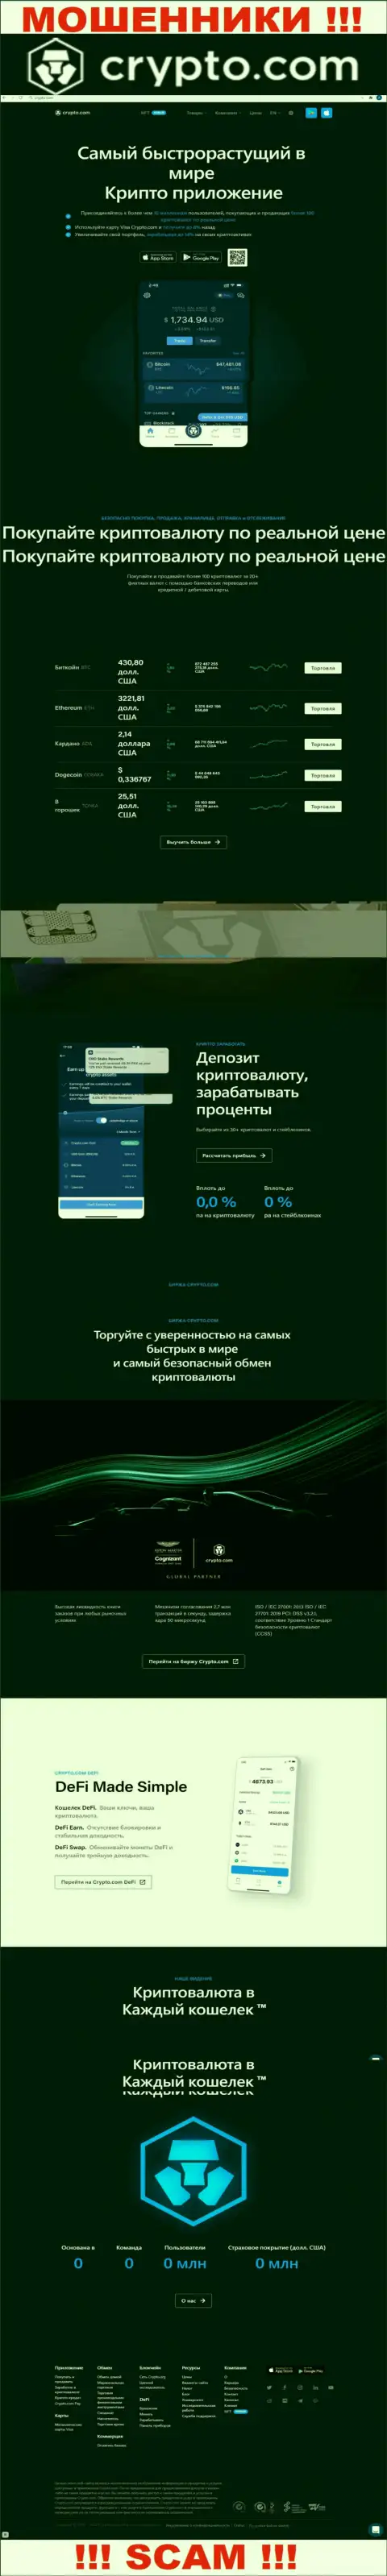 Официальный сайт мошенников КриптоКом, переполненный сведениями для лохов